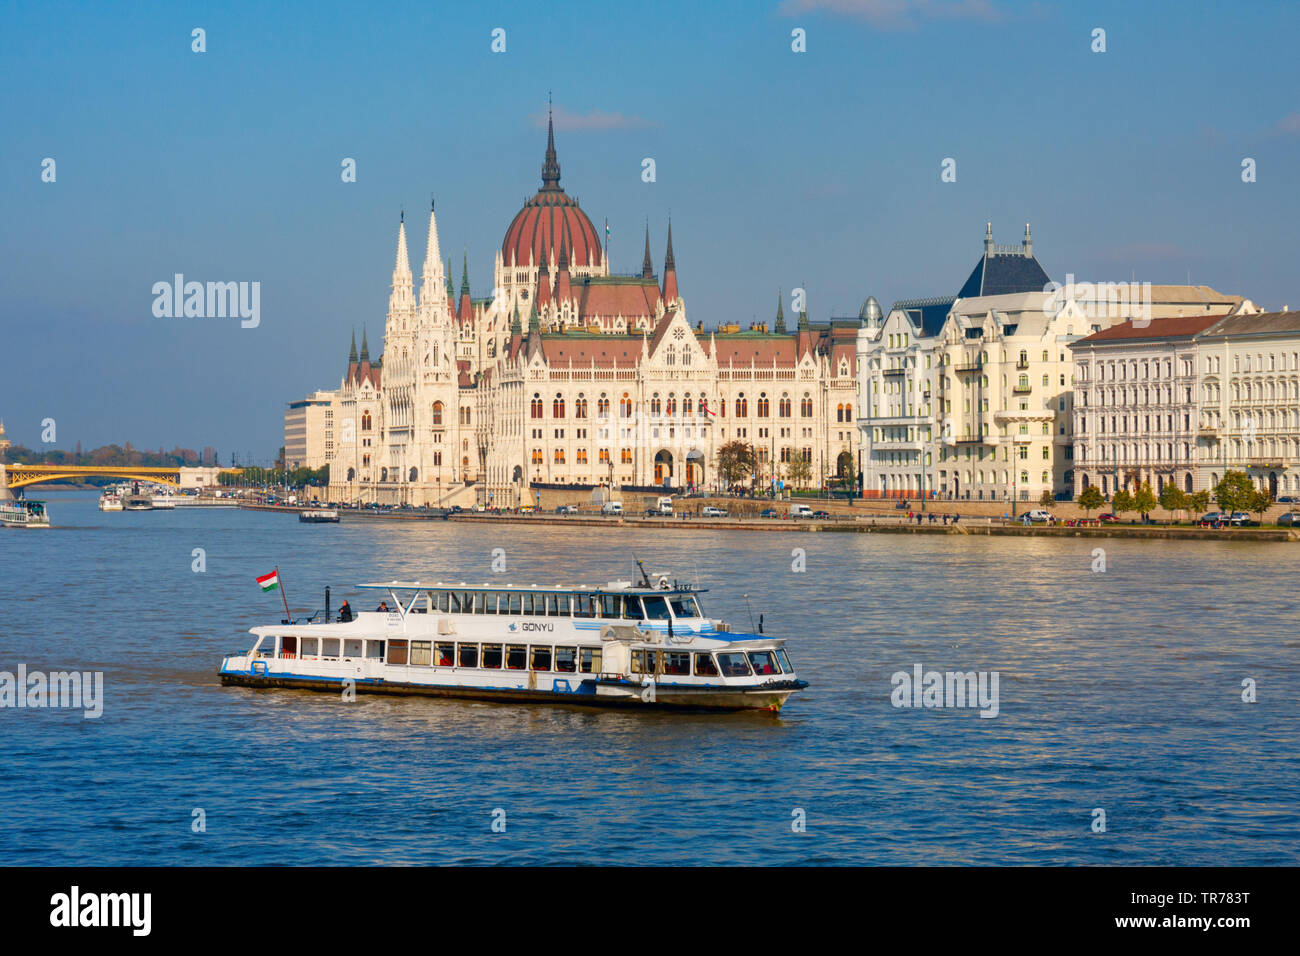 La barca turistica sul Danubio con il parlamento ungherese edificio (Orszaghaz) in background sotto un cielo blu. Budapest, Ungheria. Foto Stock